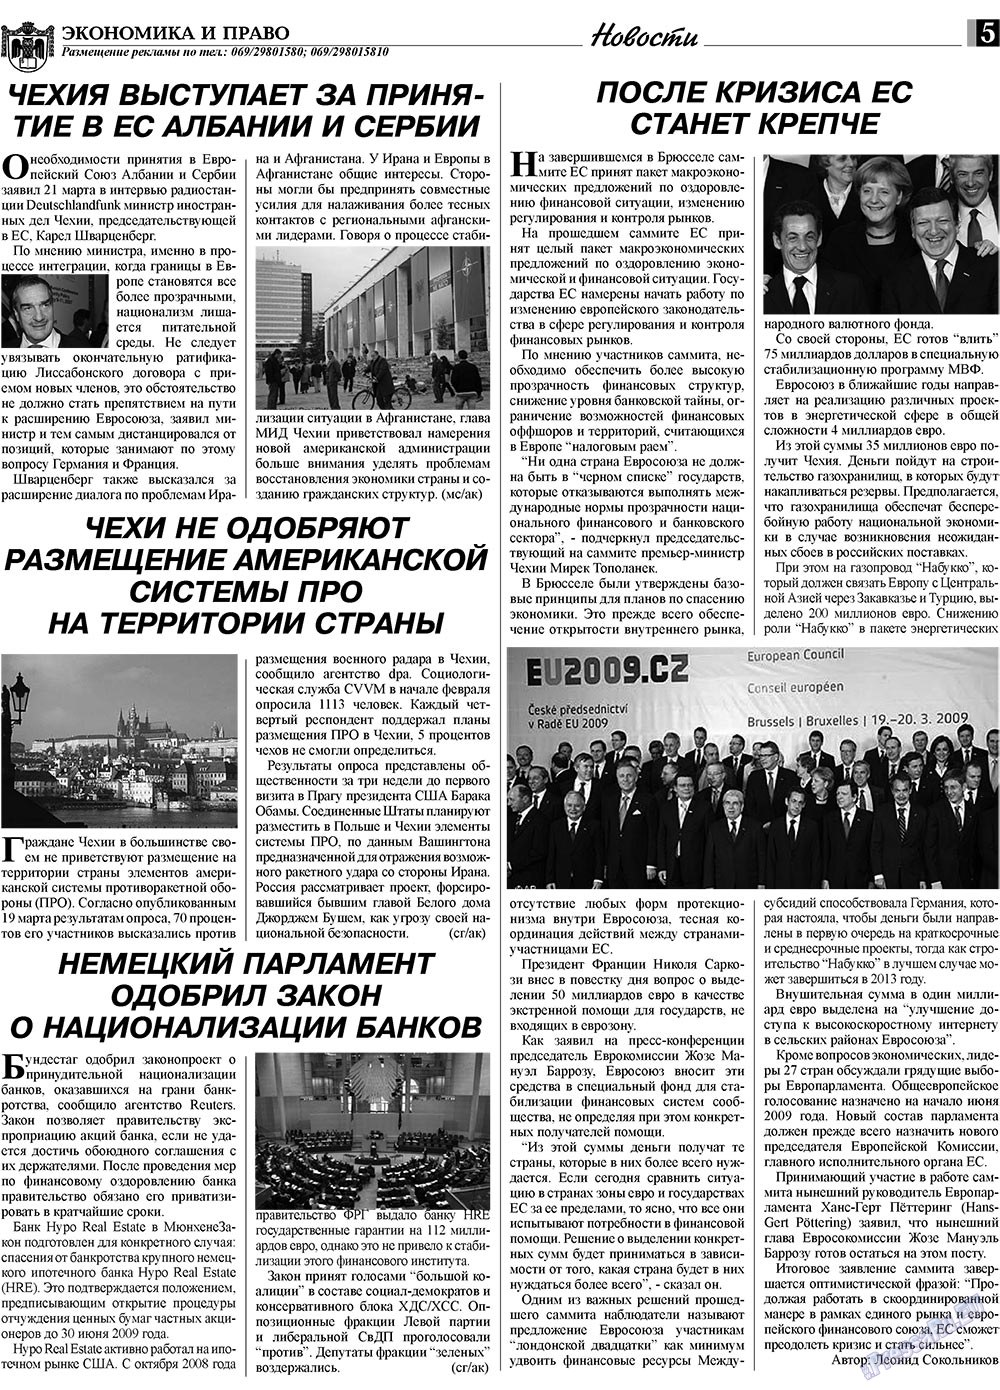 Экономика и право, газета. 2009 №4 стр.5